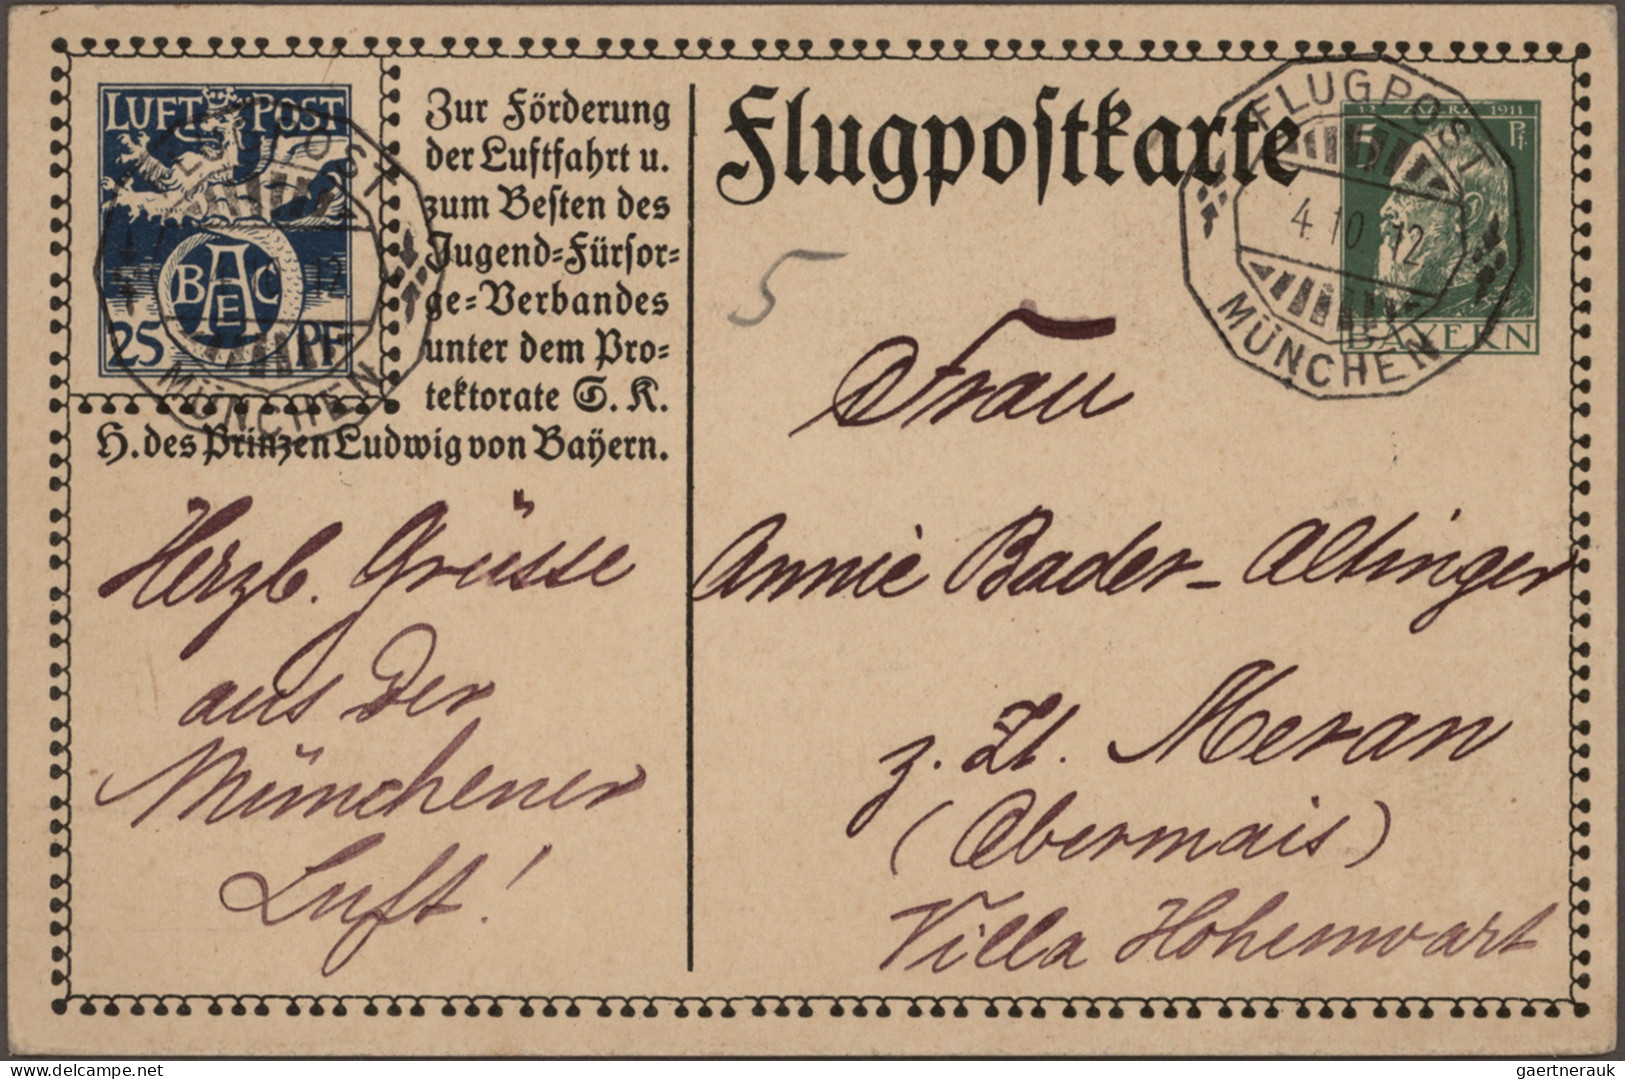 Bayern - Ganzsachen: 1875/1920, nette Partie von ca. 82 gebrauchten und ungebrau